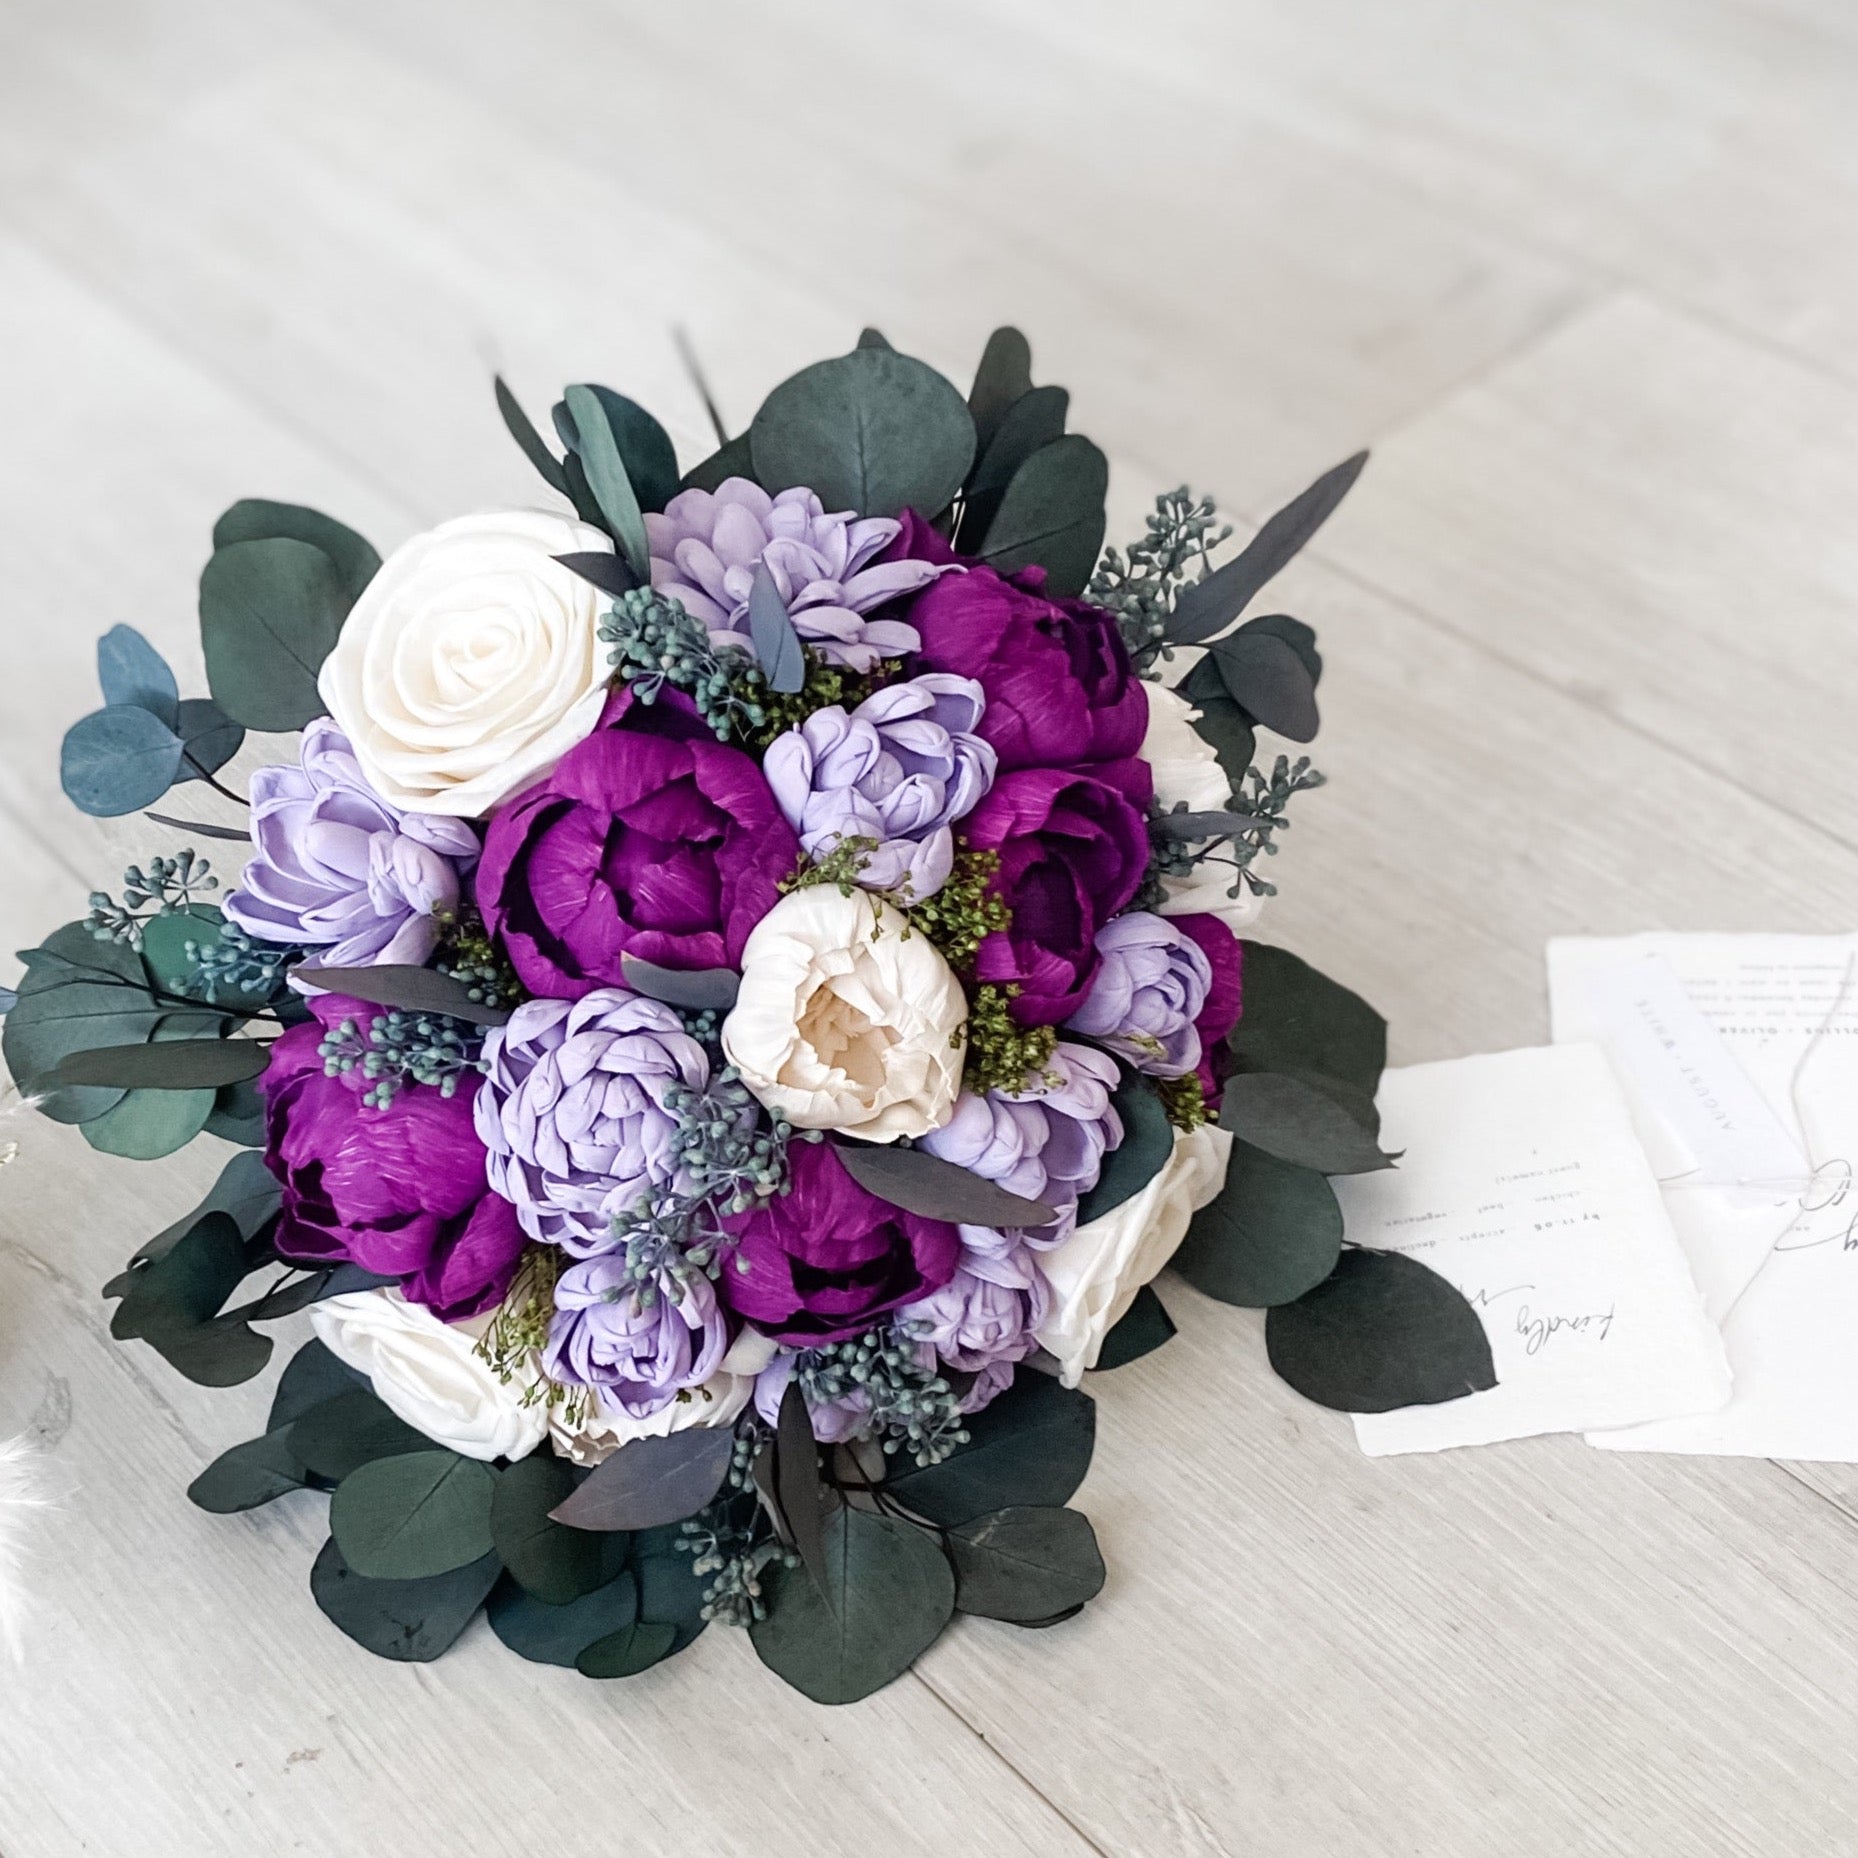 Plum Lavender Wedding Bridal Bouquet - PapiroExtra Large 12&quot; Bride